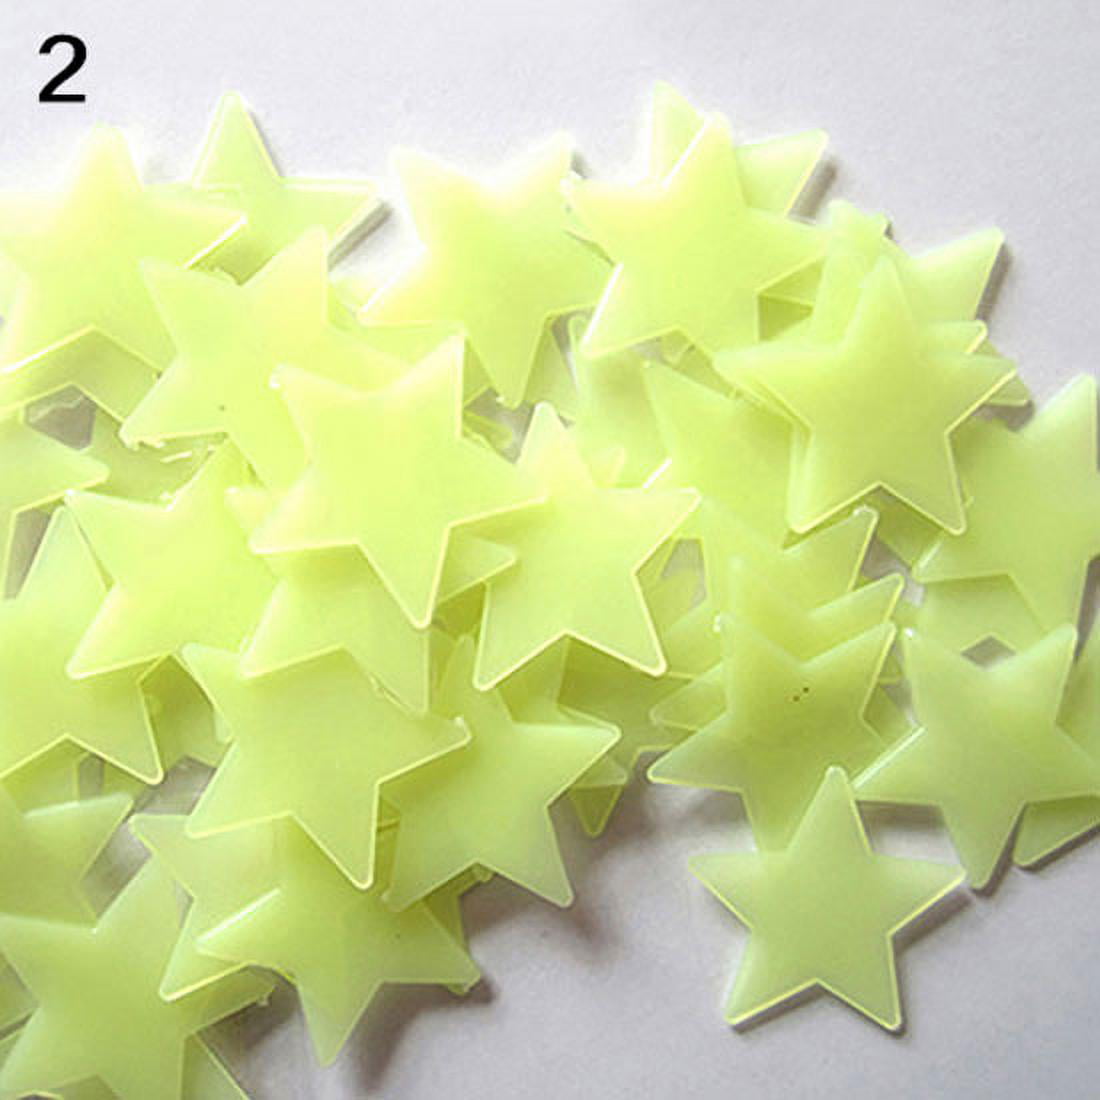 Farfi 100Pcs 3D Stars Glow In The Dark Ceiling Wall Stickers Cute